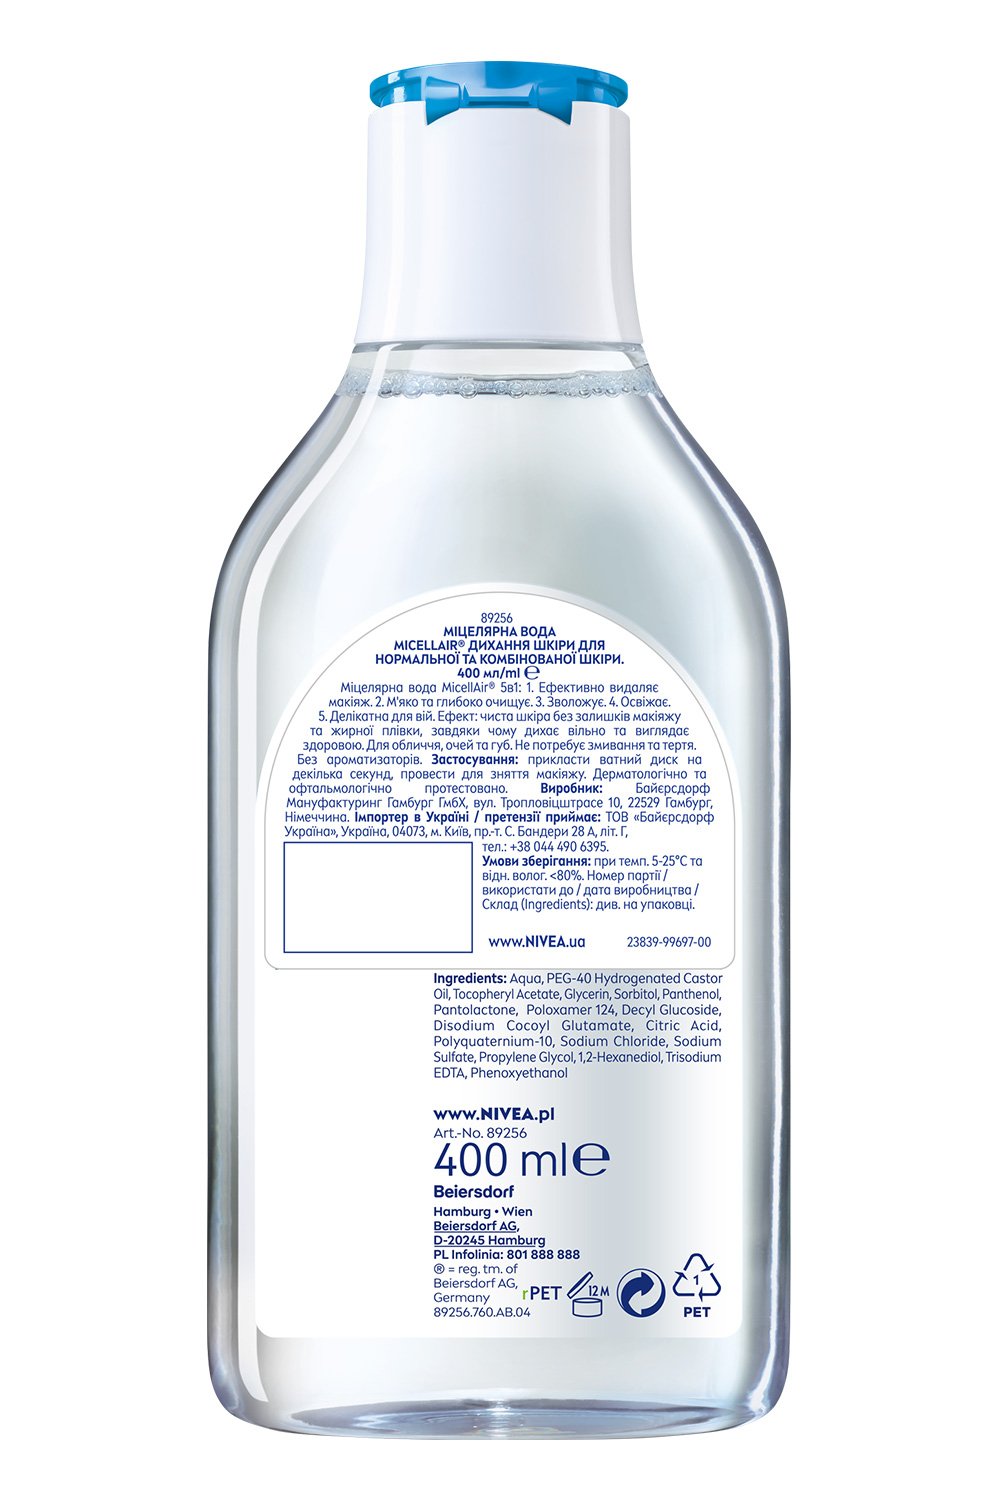 Міцелярна вода Nivea MicellAIR Дихання шкіри, для нормальної і комбінованої шкіри, 400 мл - фото 8